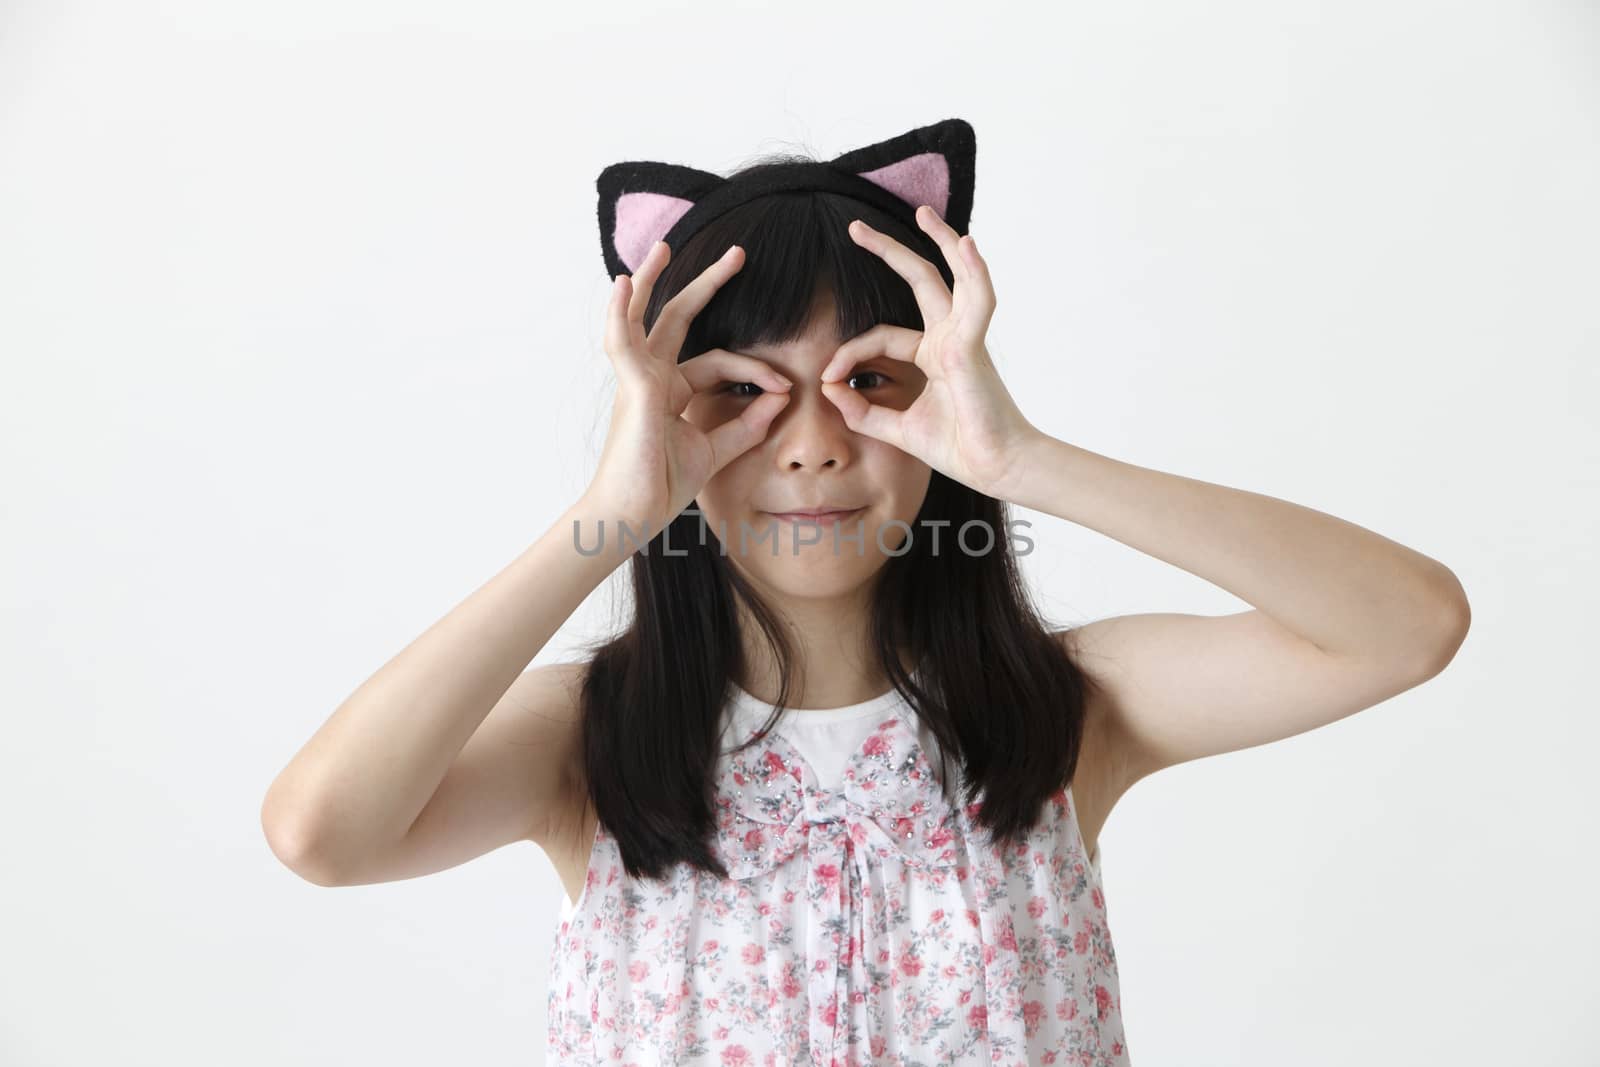 chinese girl wearing cute hair band looking at camera